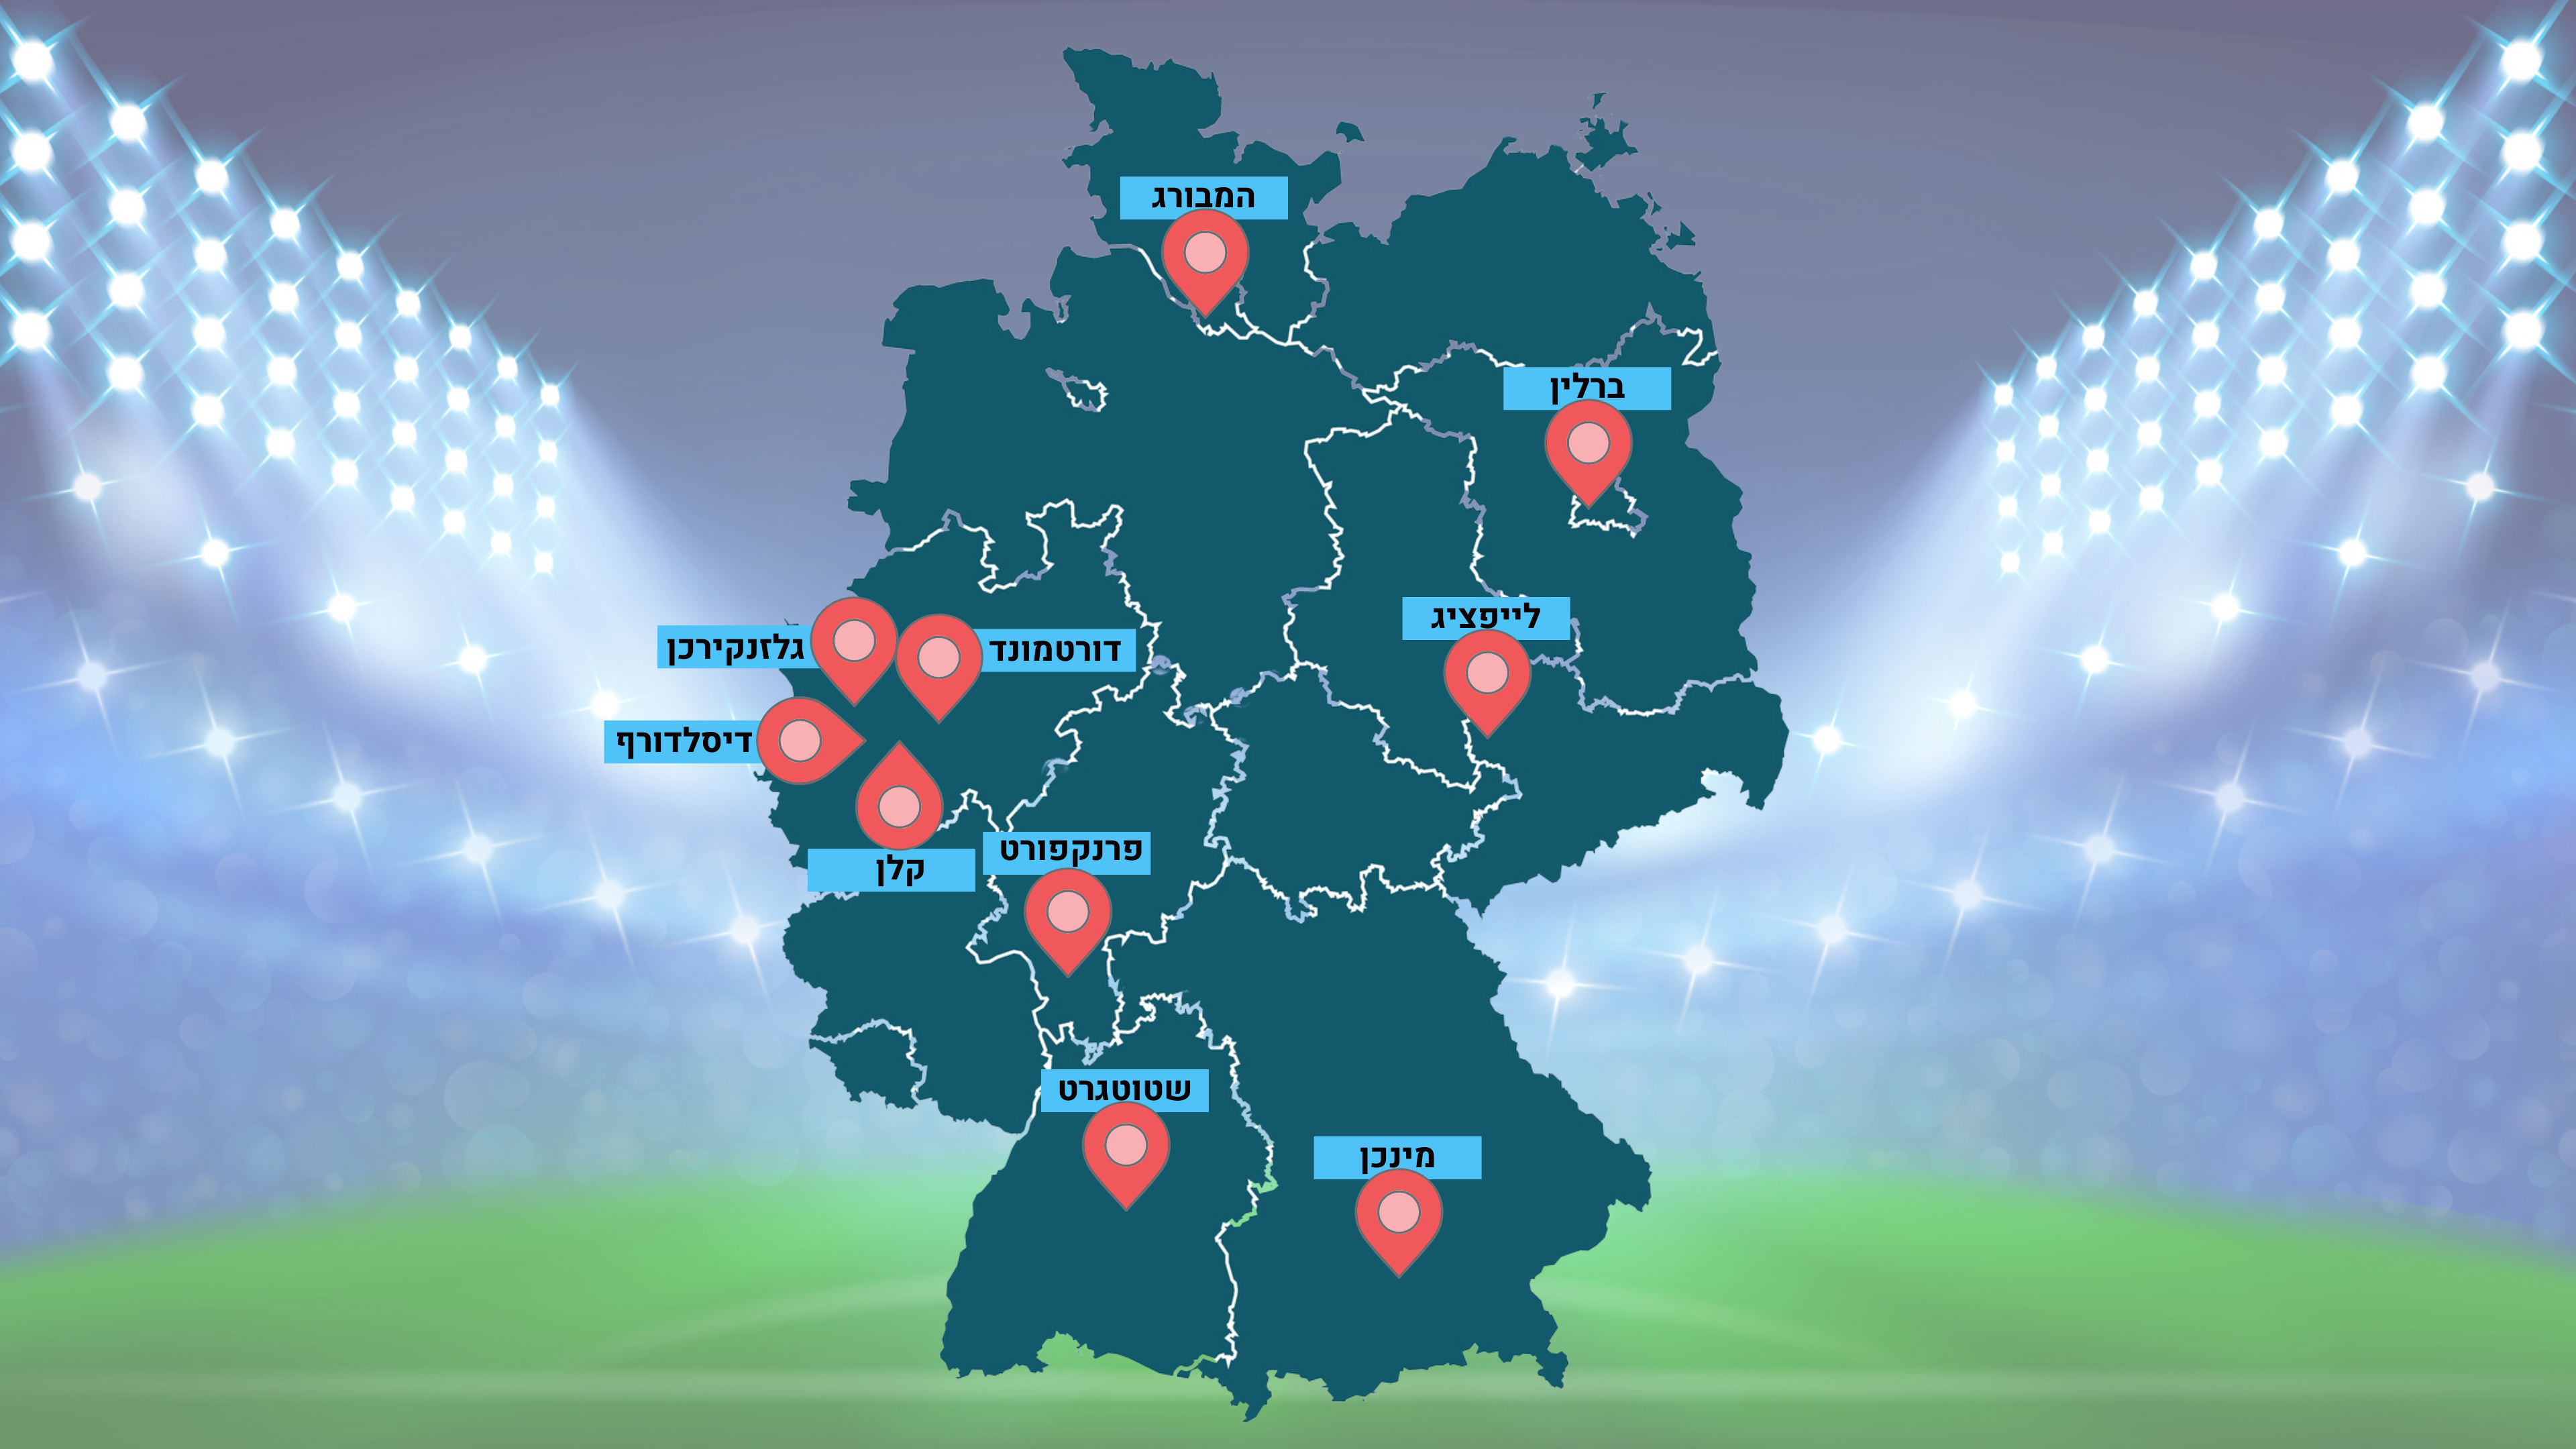 מפה של גרמניה עליה מסומנות הערים בהן ייערכו משחקי יורו 2024: דורטמונד, גלזנקירכן, דיסלדורף, קלן, פרנקפורט, שטוטגרט,  מינכן, לייפציג, ברלין והמבורג